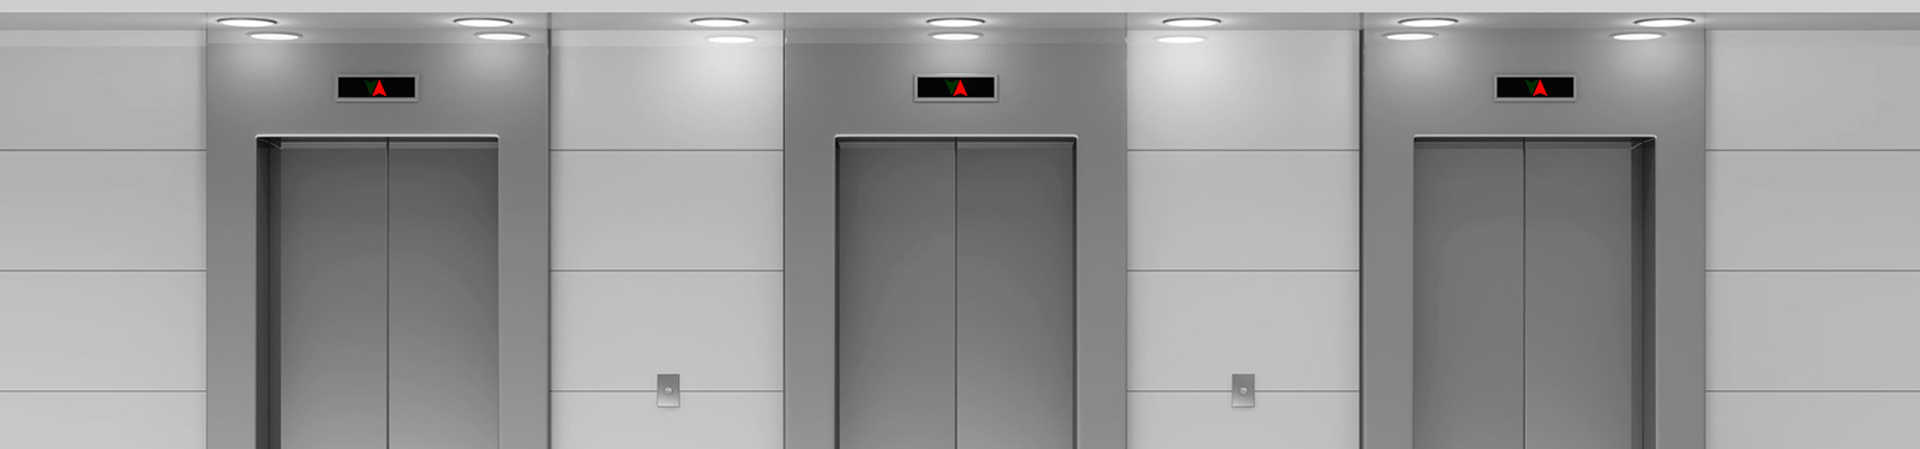 Manutenzione ascensore